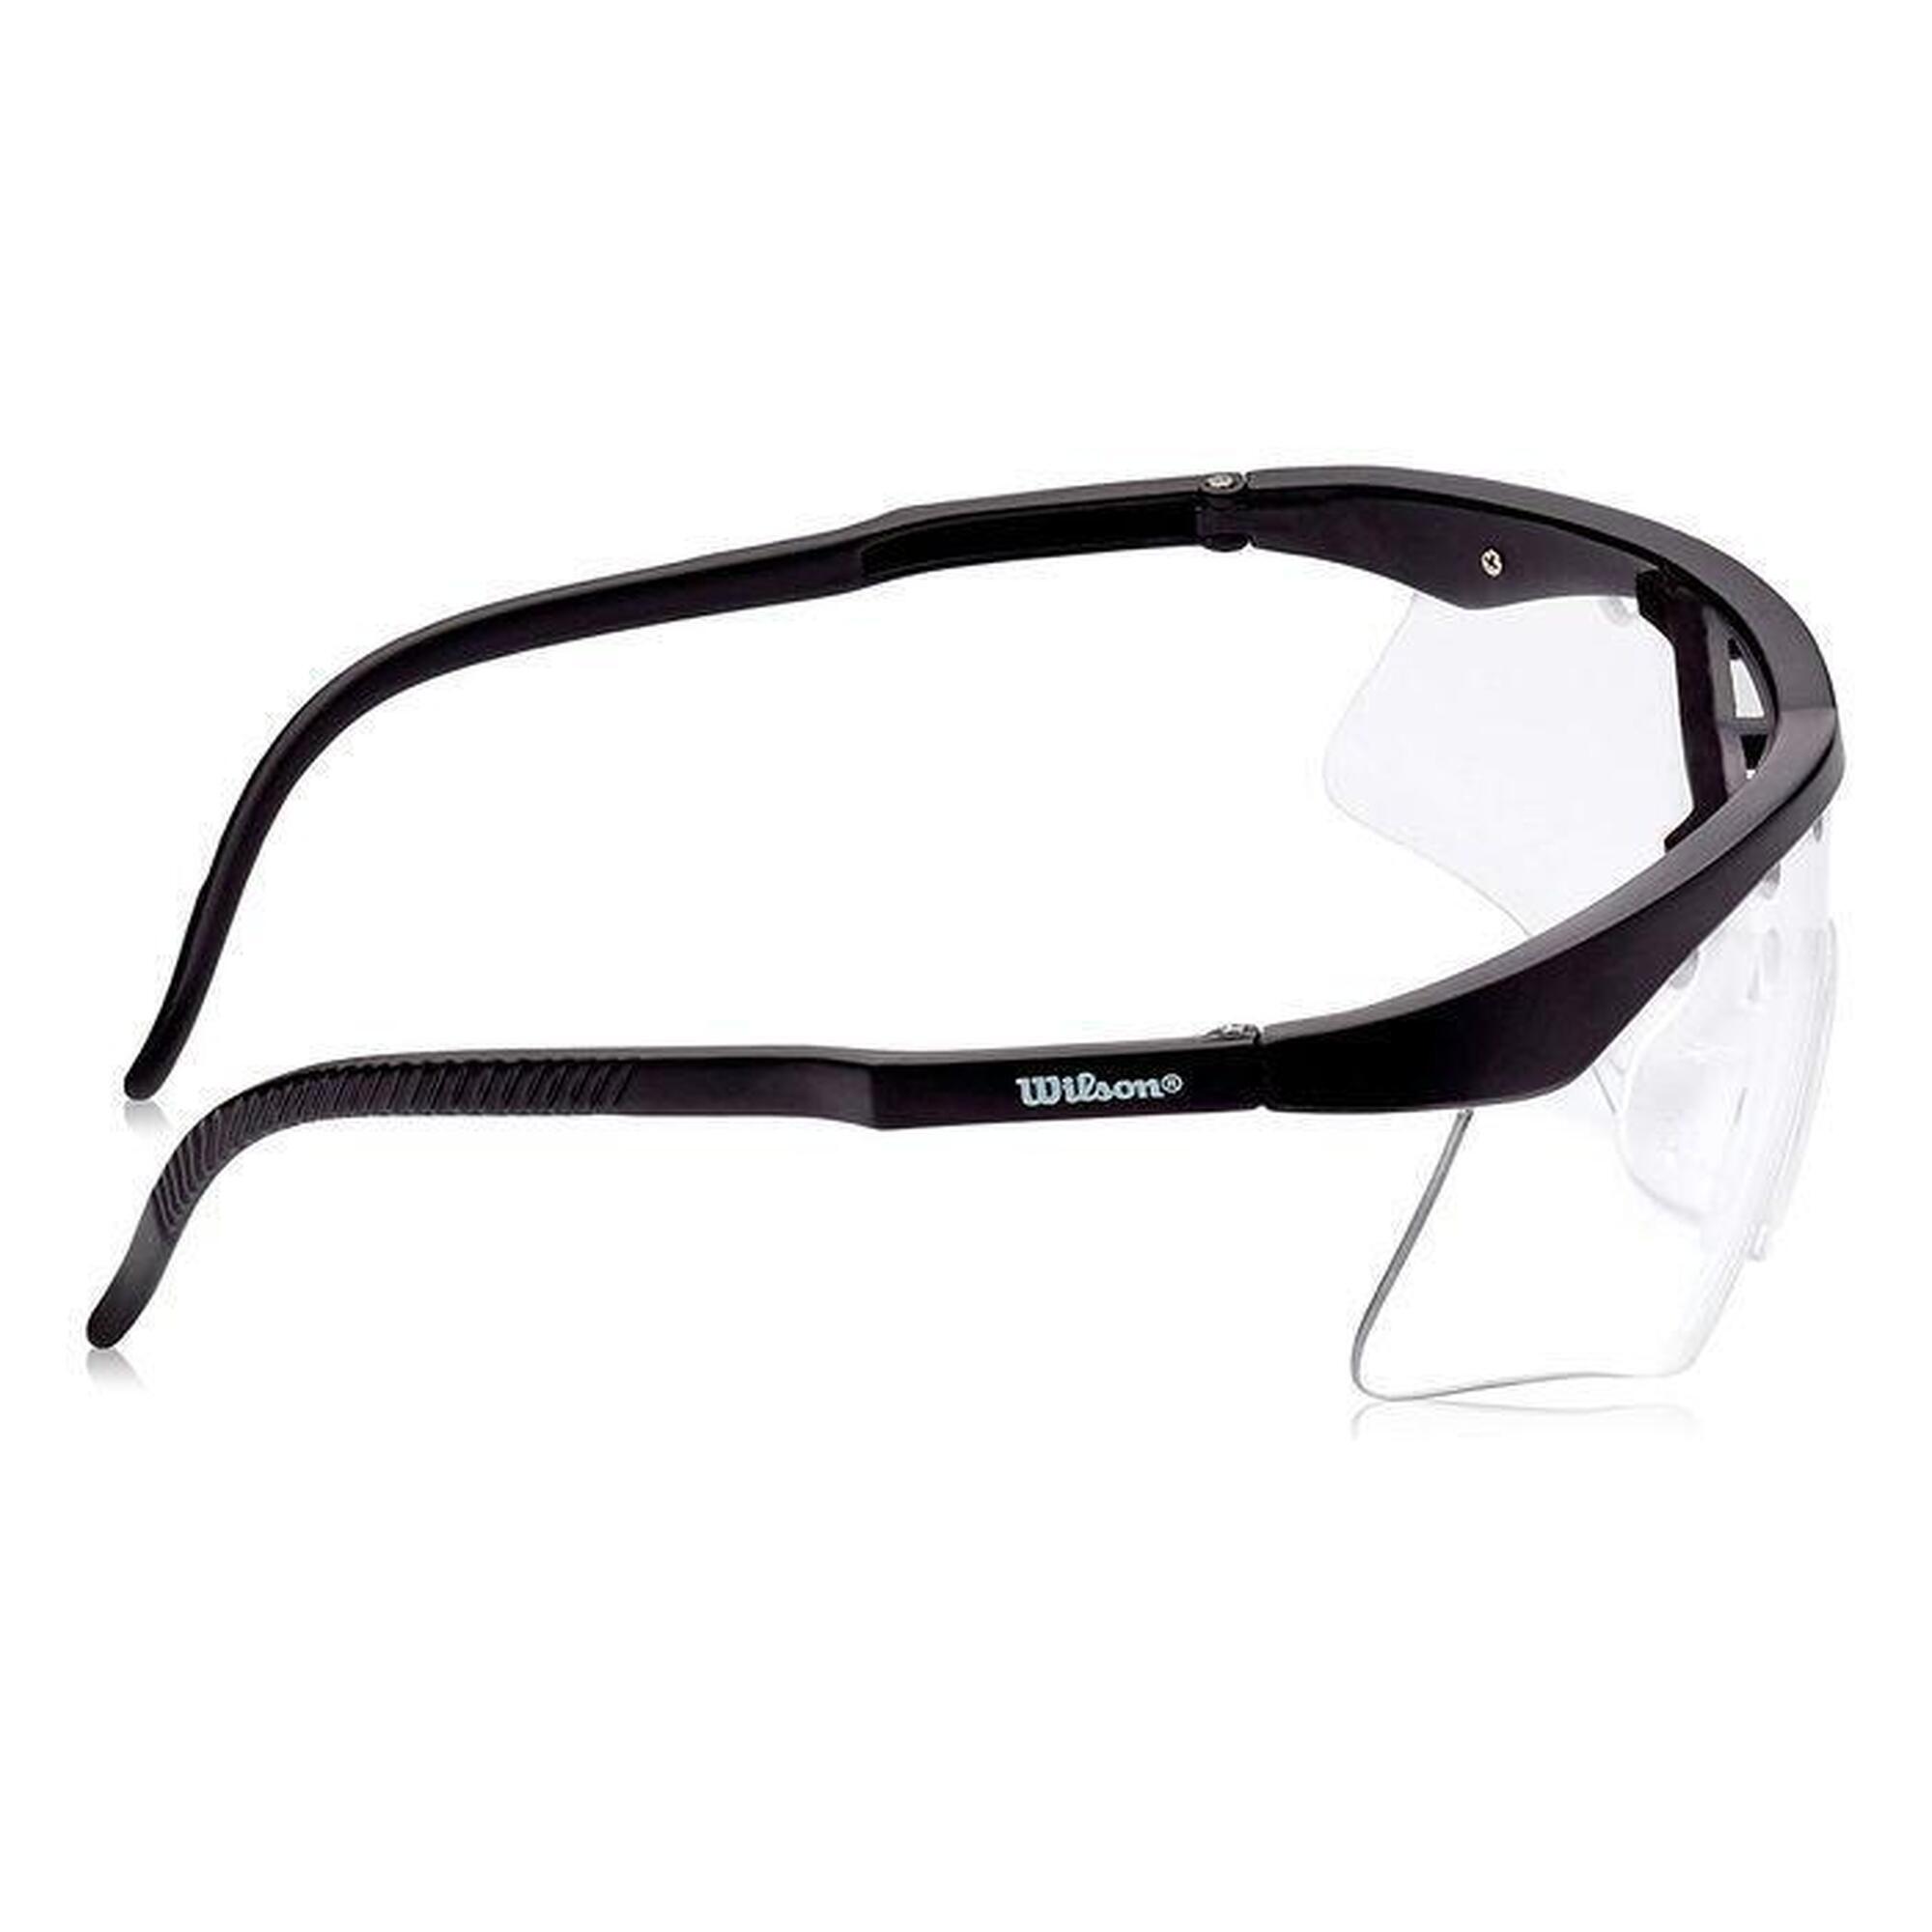 Okulary do squasha Wilson Jet Protective Eyewear